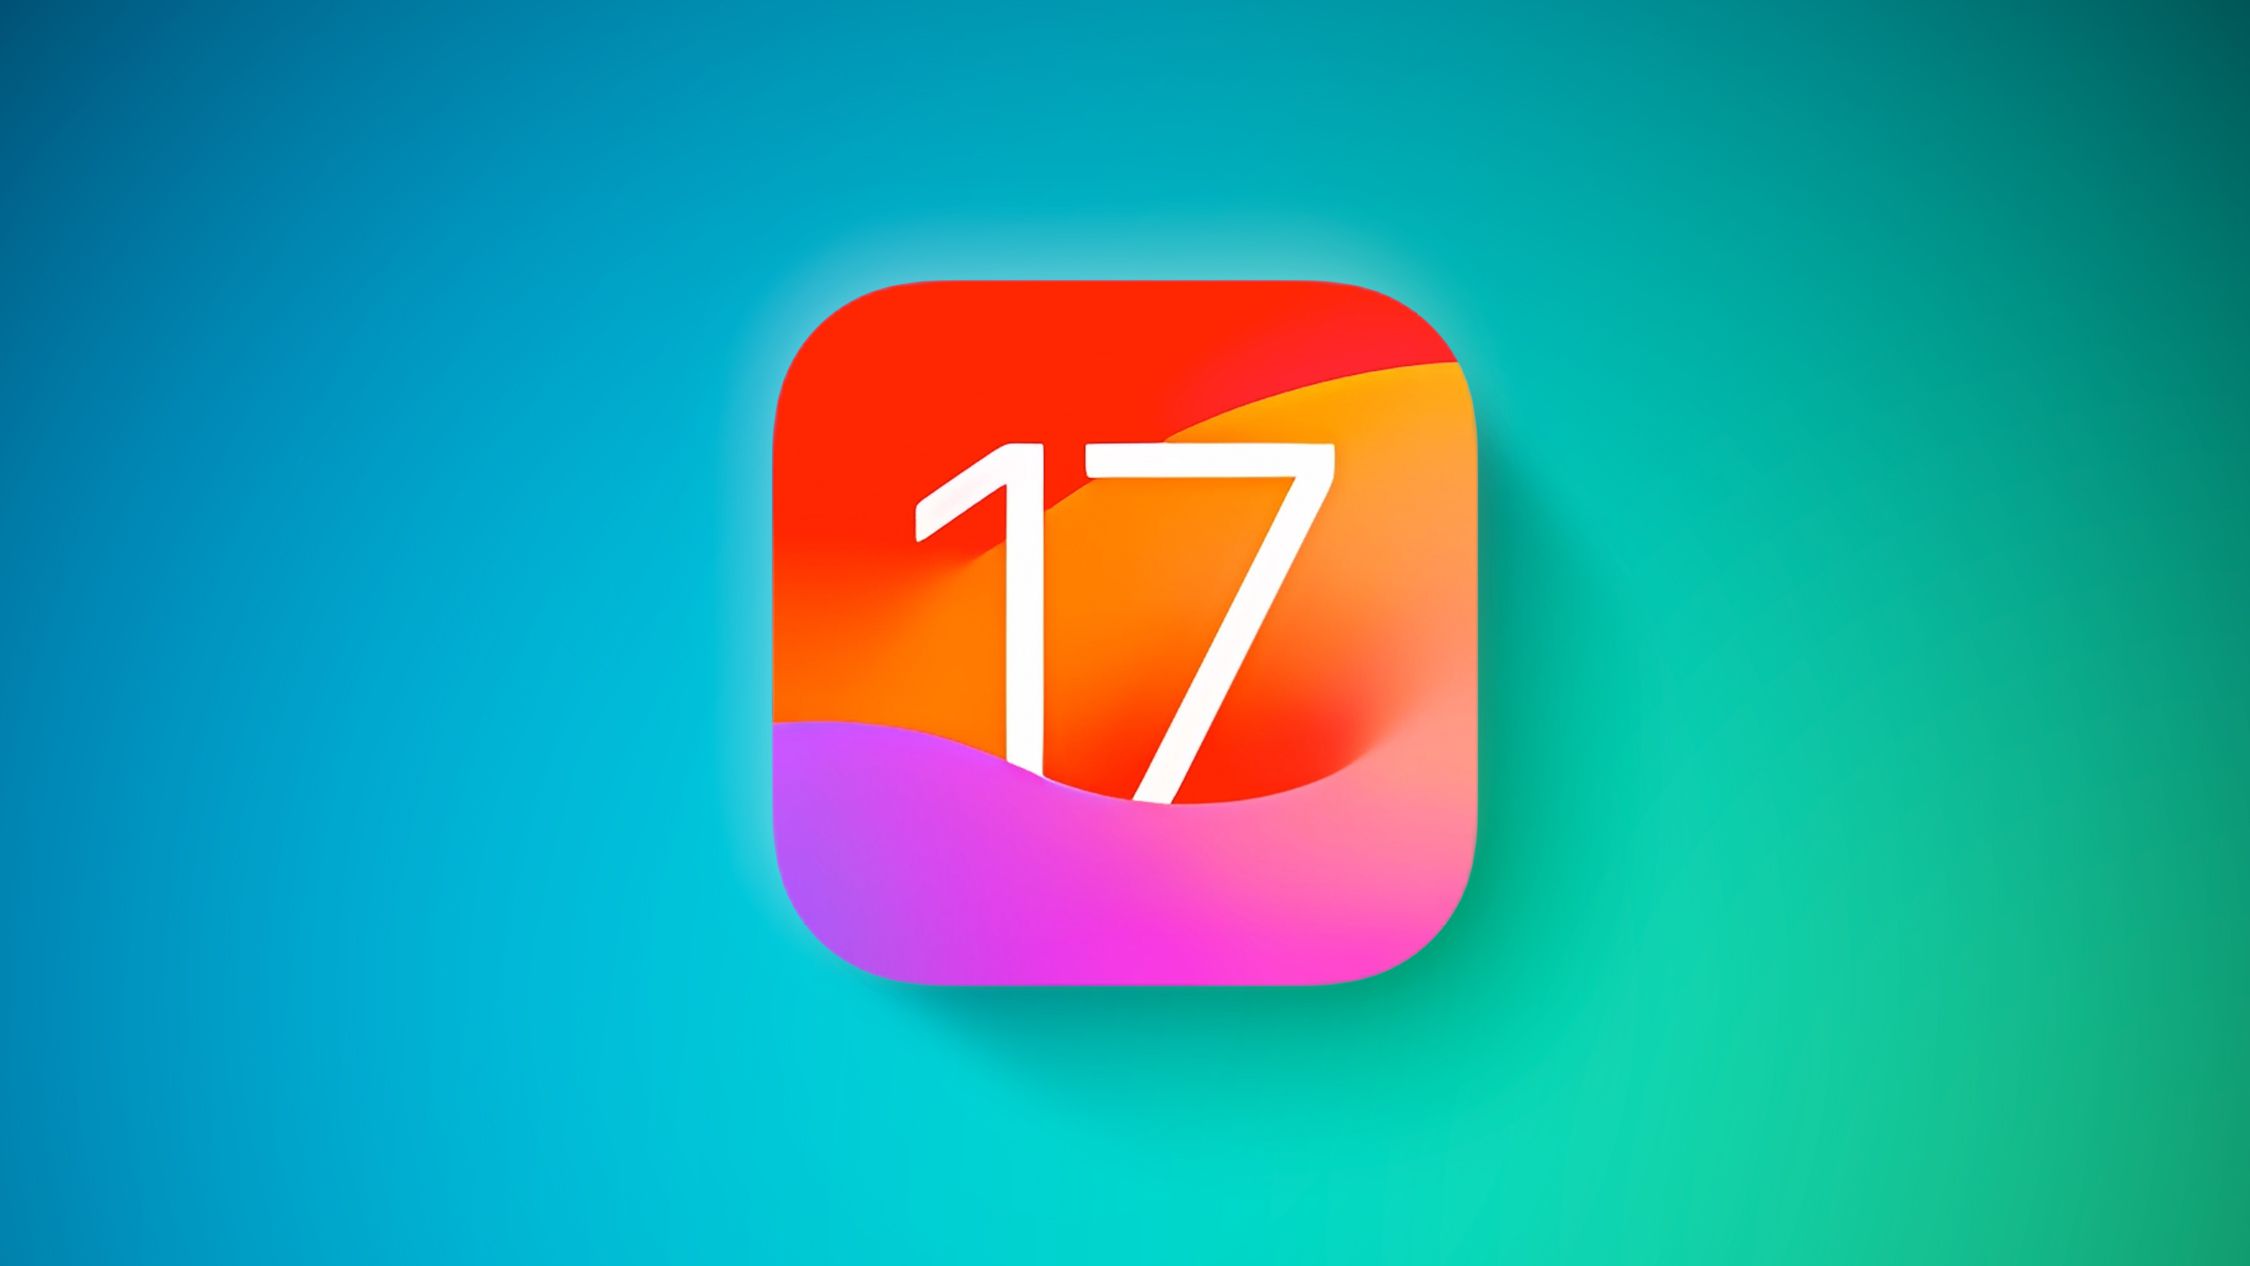 Apple ha lanzado las segundas versiones beta públicas de iOS 17 y iPadOS 17, así como una versión beta revisada para desarrolladores.